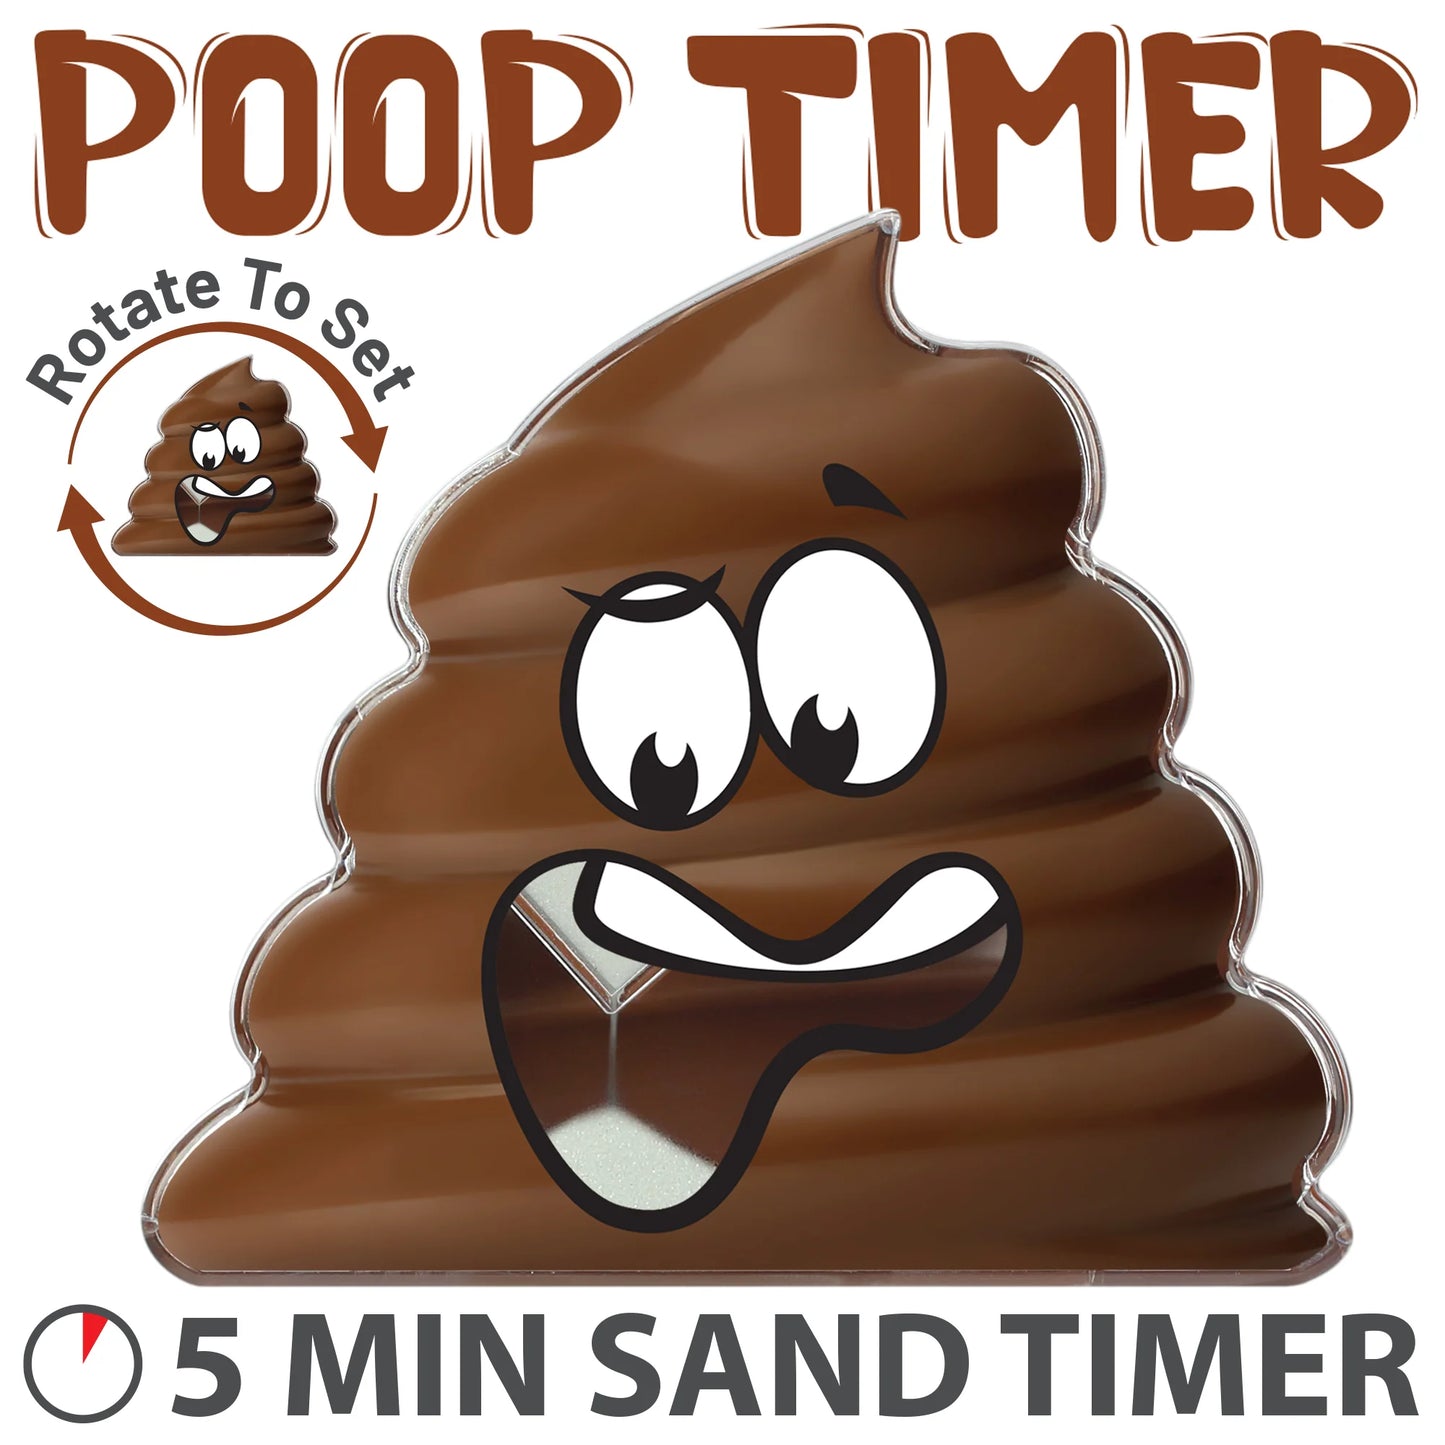 Poop Timer